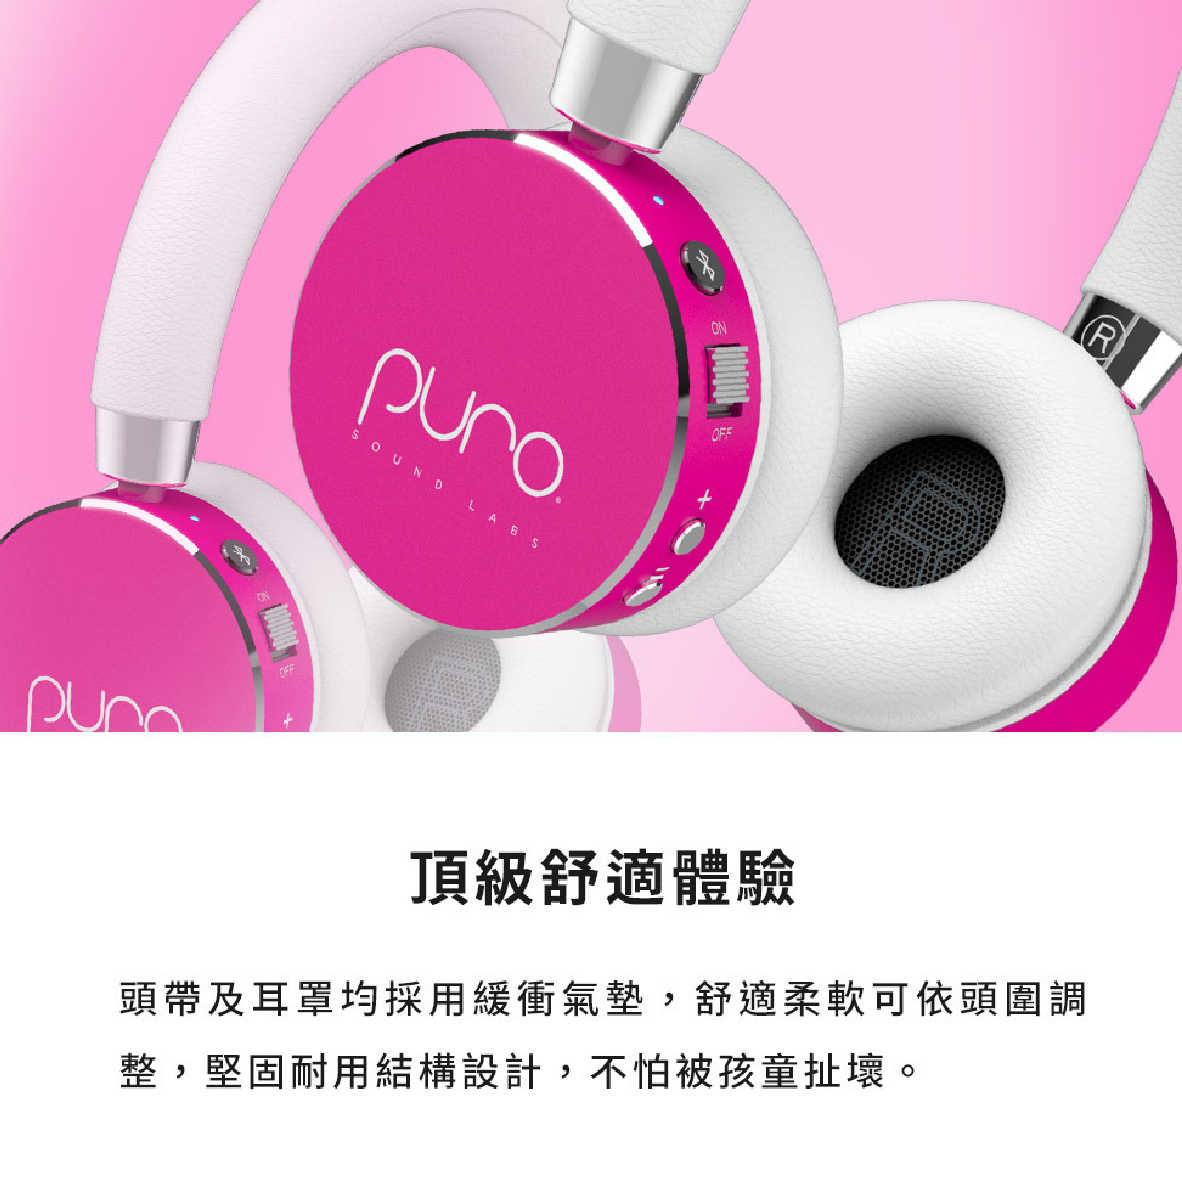 Puro BT2200s 音量控制 內建麥克風 20hr續航 兒童耳機 耳罩式耳機 | 金曲音響